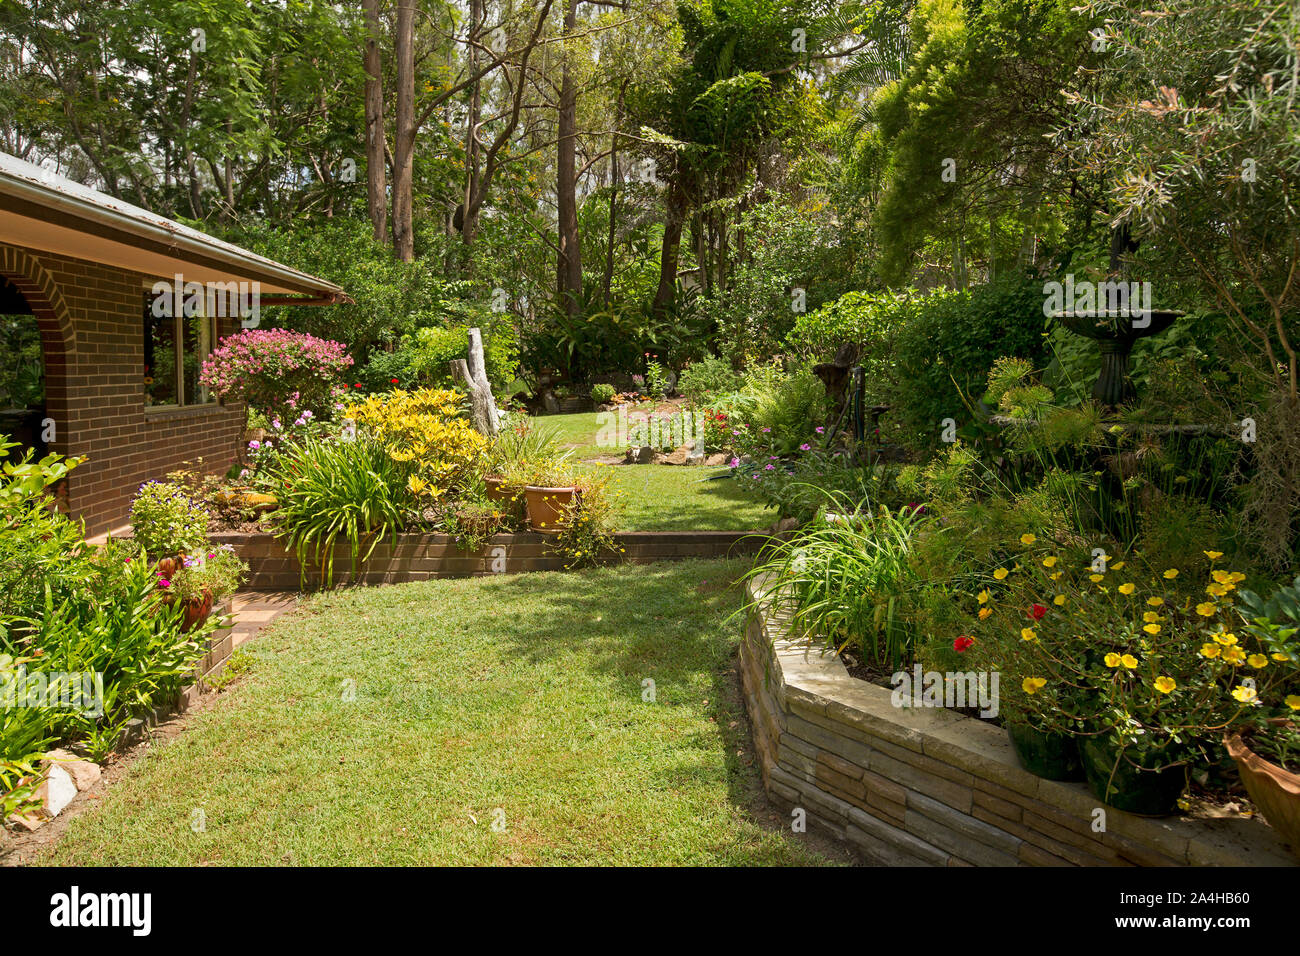 Jardin coloré avec pelouse et jardin chambres avec point d'eau / fontaine, arbustes à fleurs, plantes vivaces, arbres au bord de maison en brique en Australie Banque D'Images